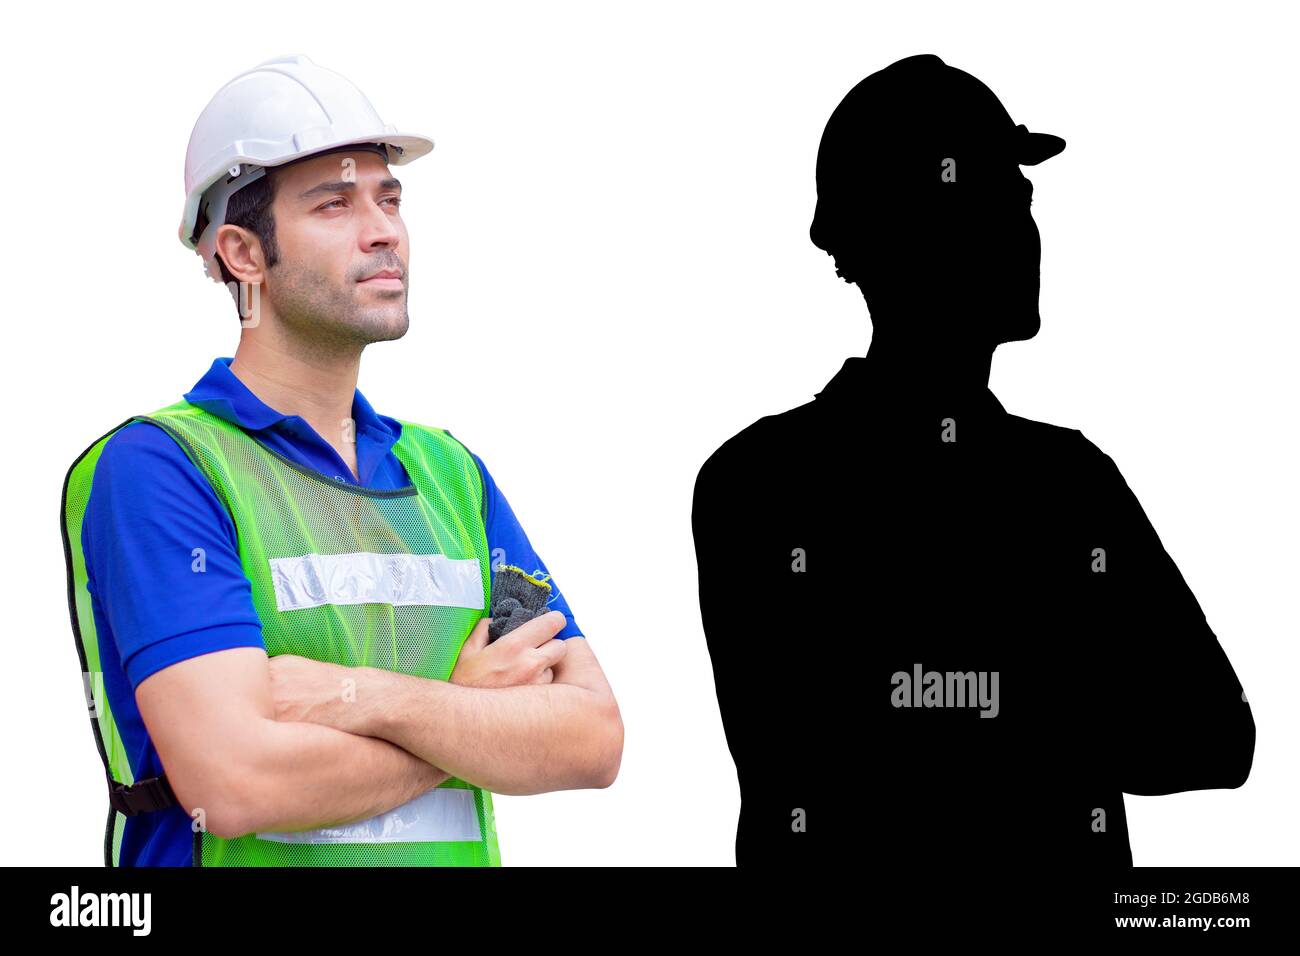 Ingenieur Industriearbeiter männlich stehenden Arm gekreuzt halben Körper isoliert auf weißem Hintergrund mit alpha-Kanal Schatten. Stockfoto